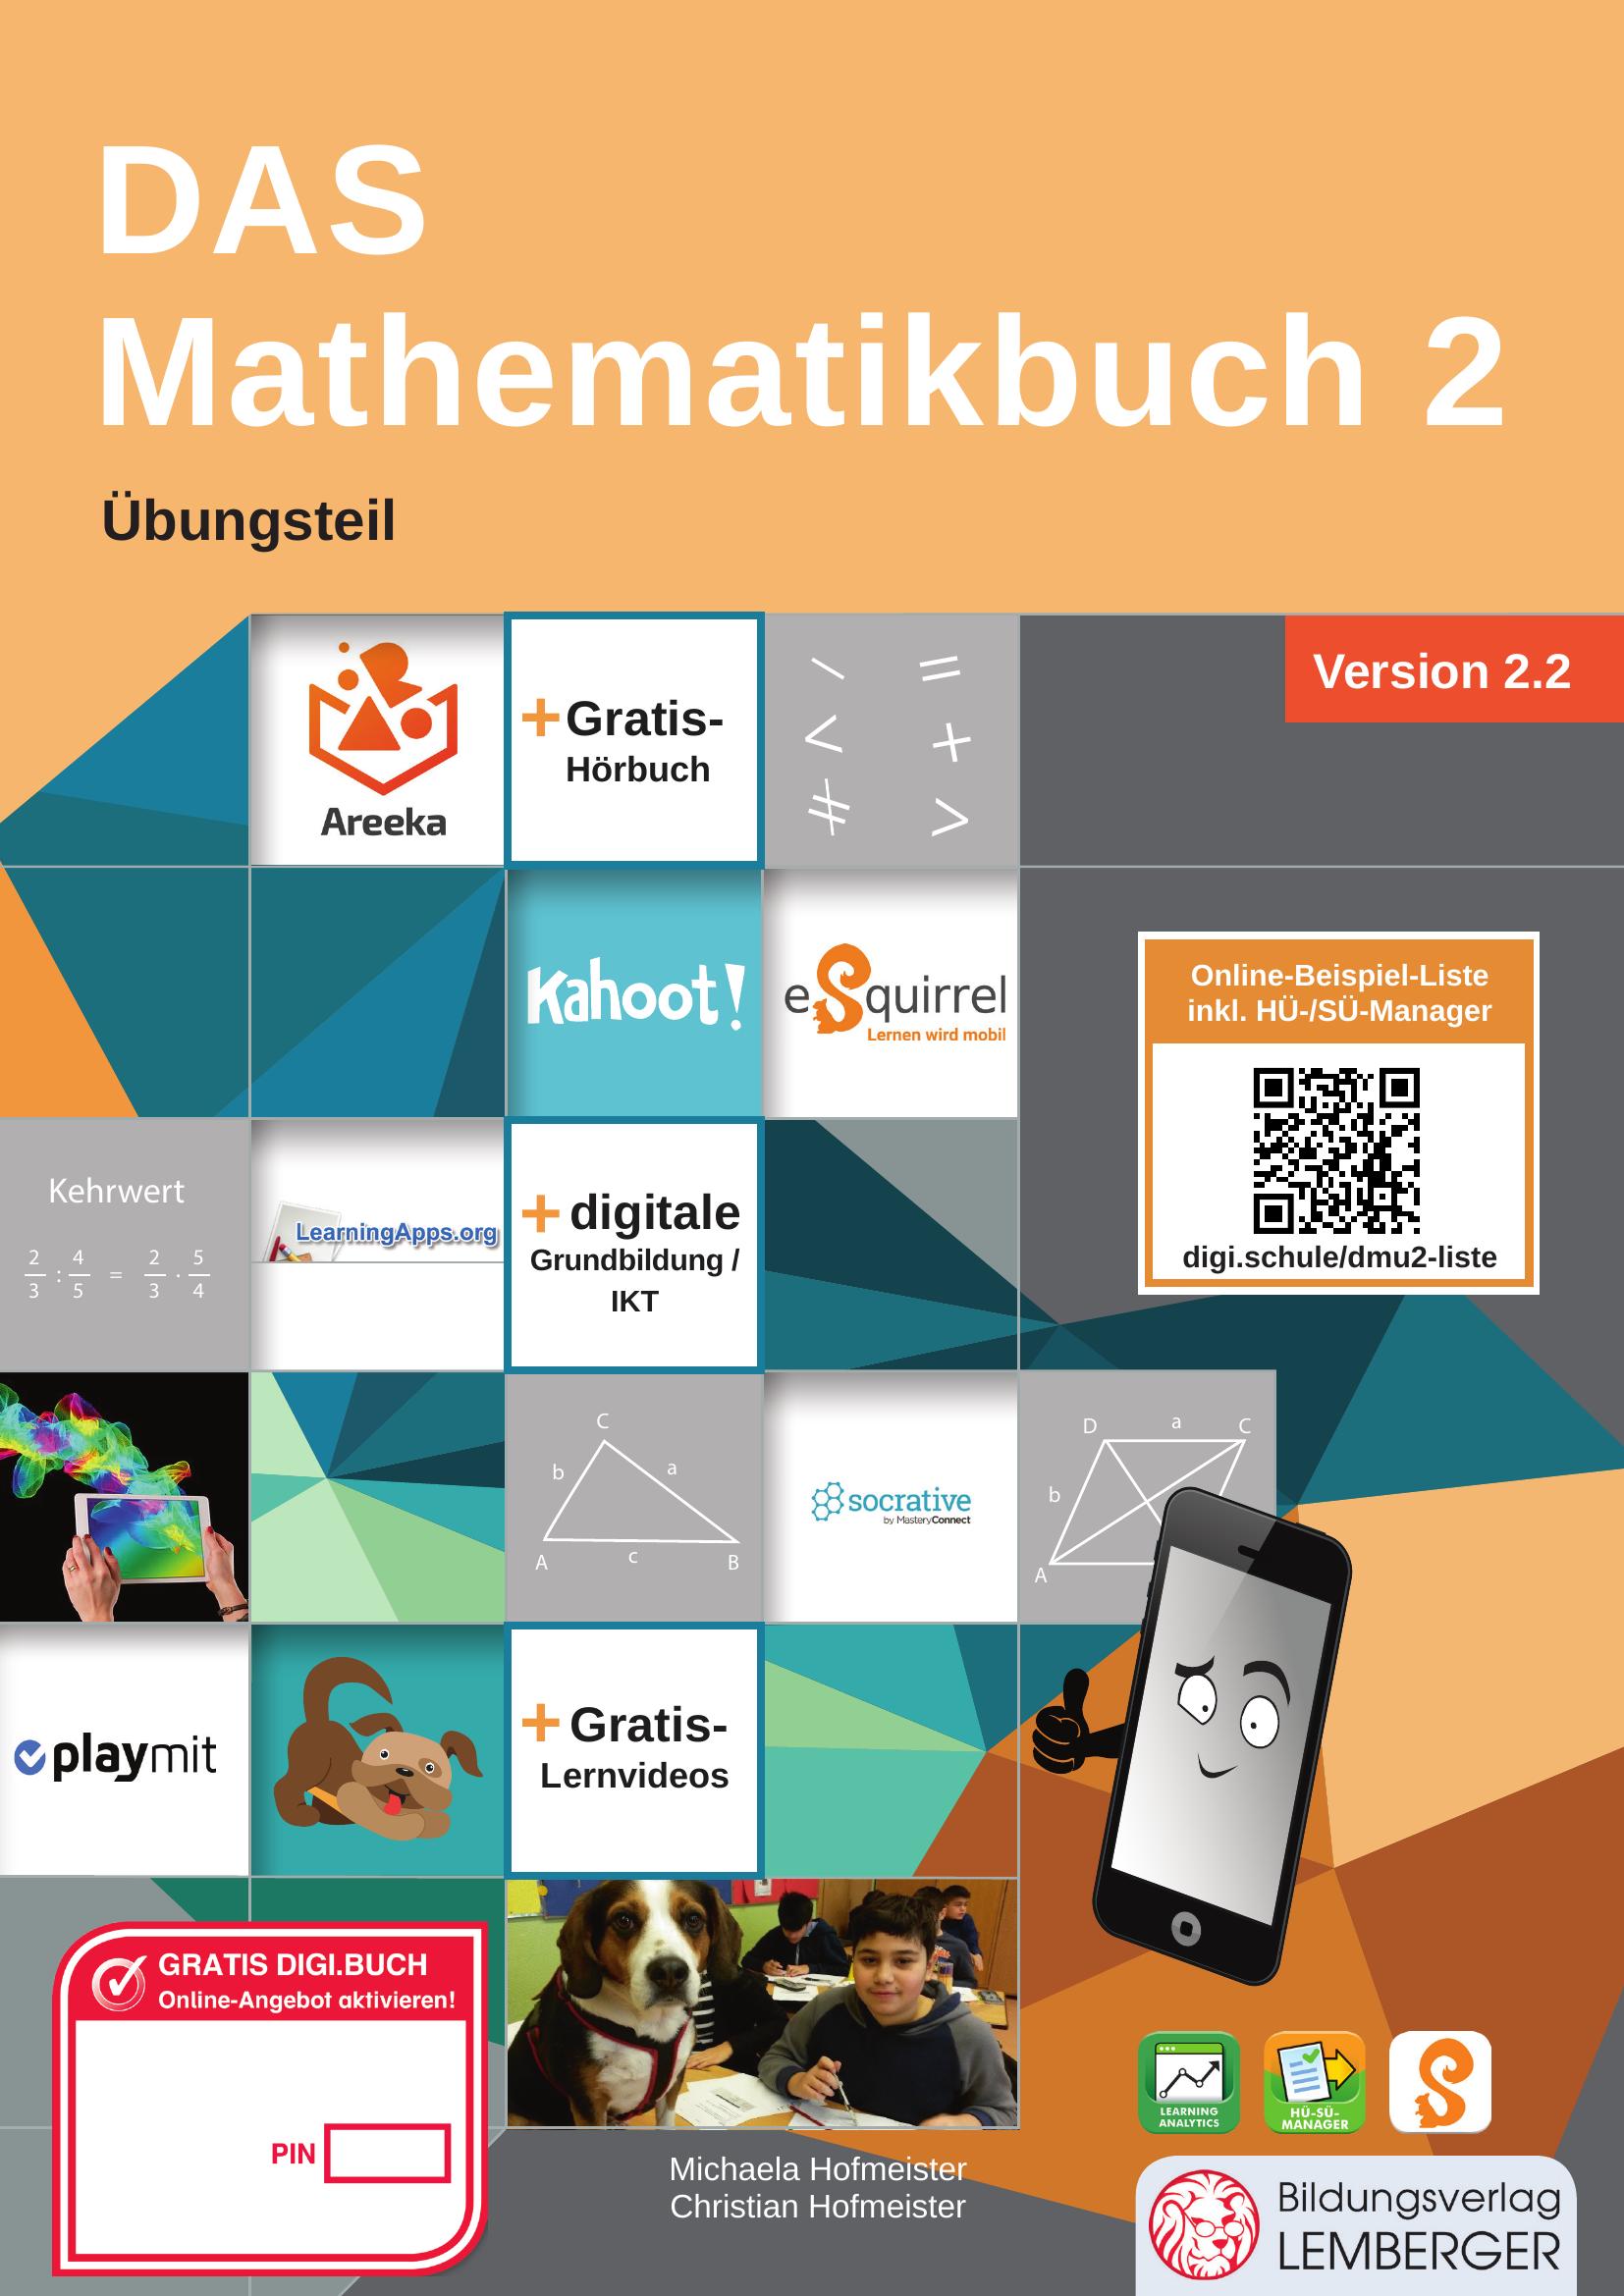 DAS Mathematikbuch 2 IKT – Übungsteil v2.2